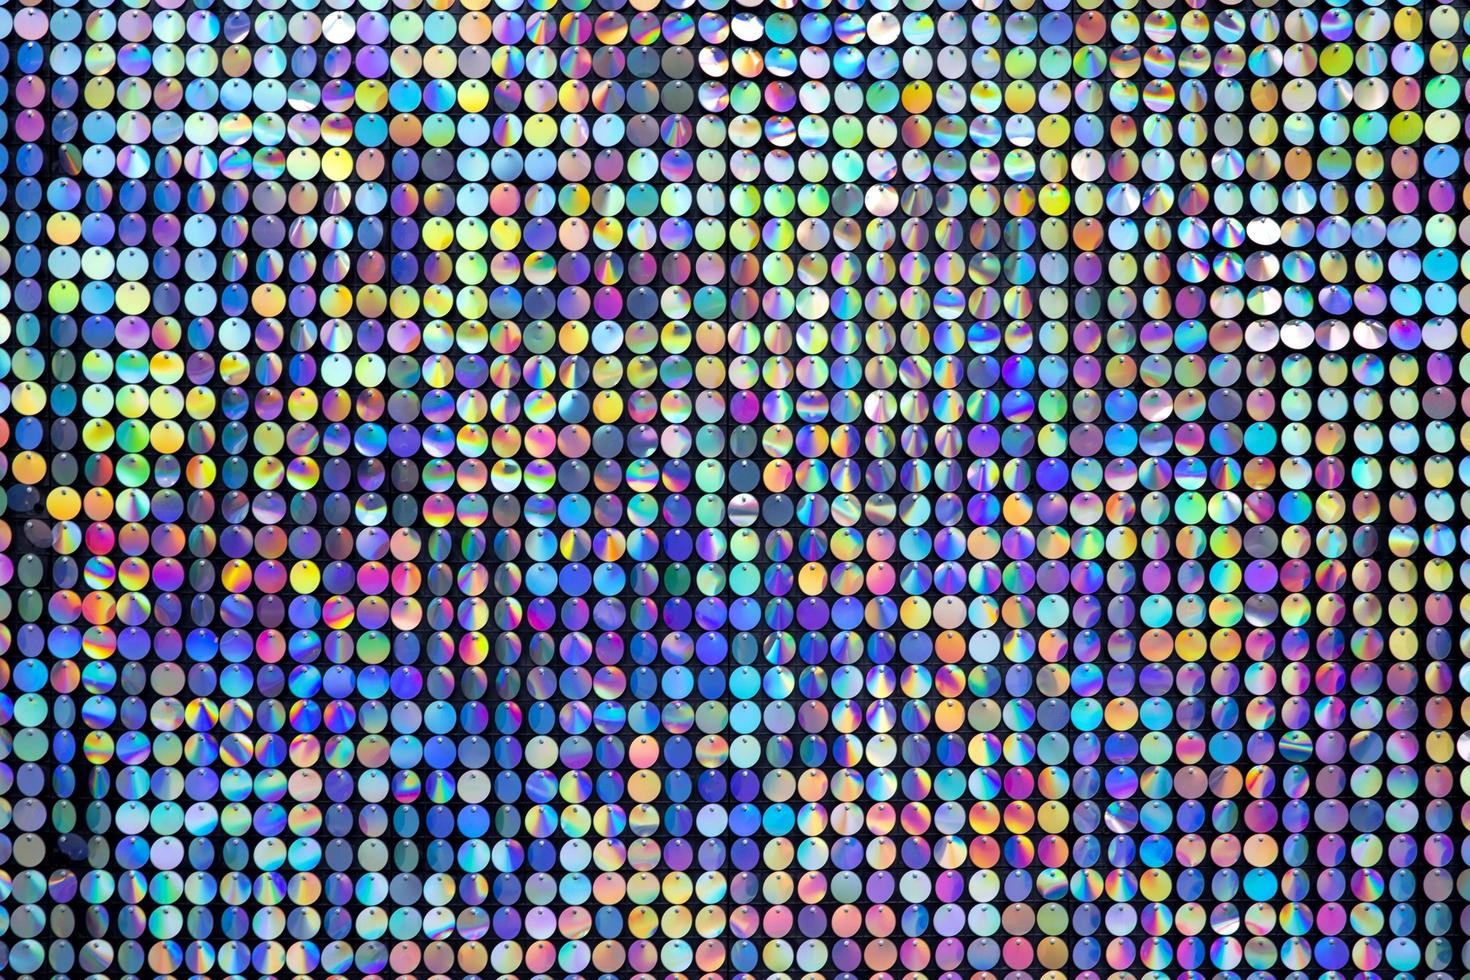 Farben der Regenbogeneisenplatte. Muster des mehrfarbigen abstrakten Hintergrunds der farbigen Würfel foto